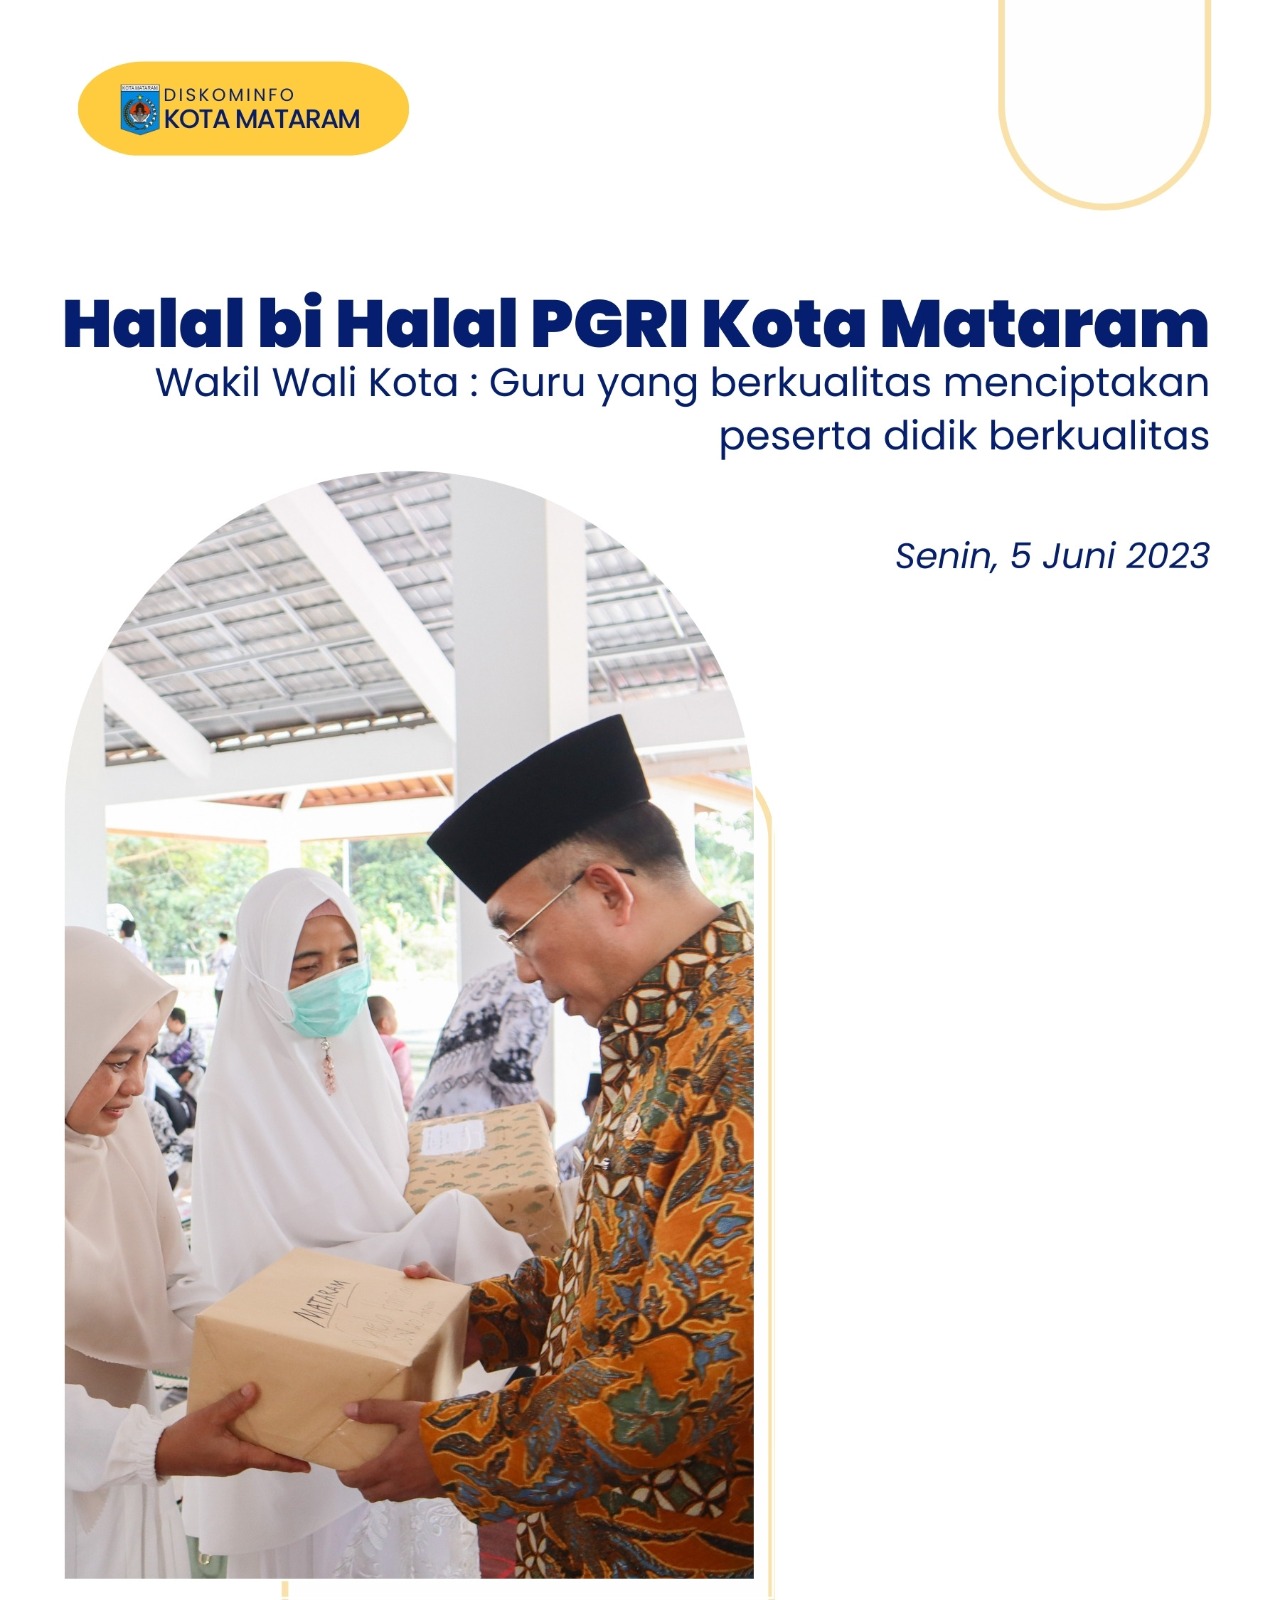 Halal Bihalal PGRI Kota Mataram